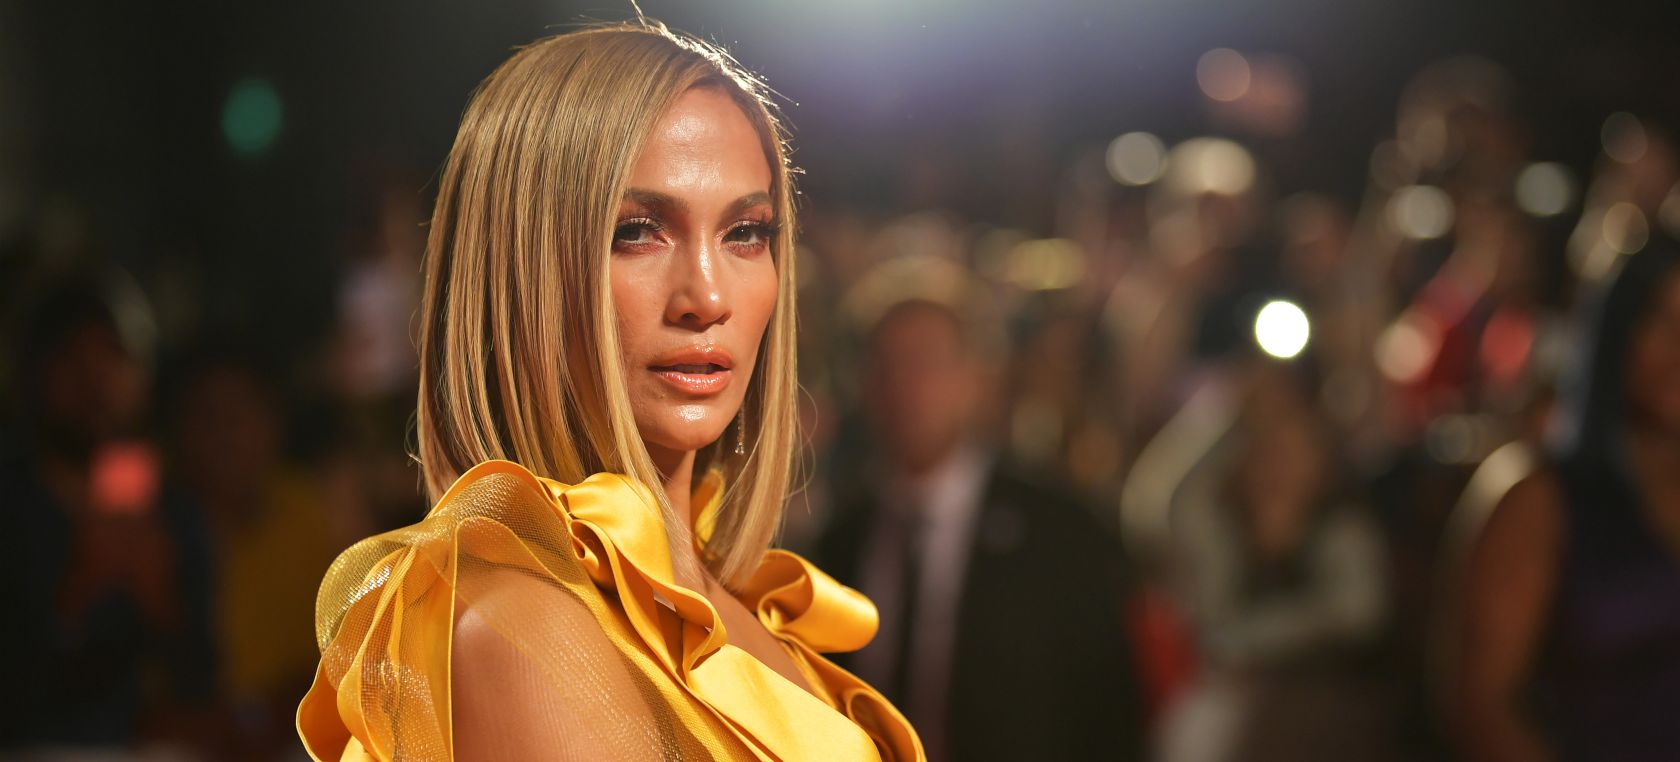 Jennifer Lopez hace un homenaje a la película que la lanzó al estrellato: “Fui afortunada al ser seleccionada”